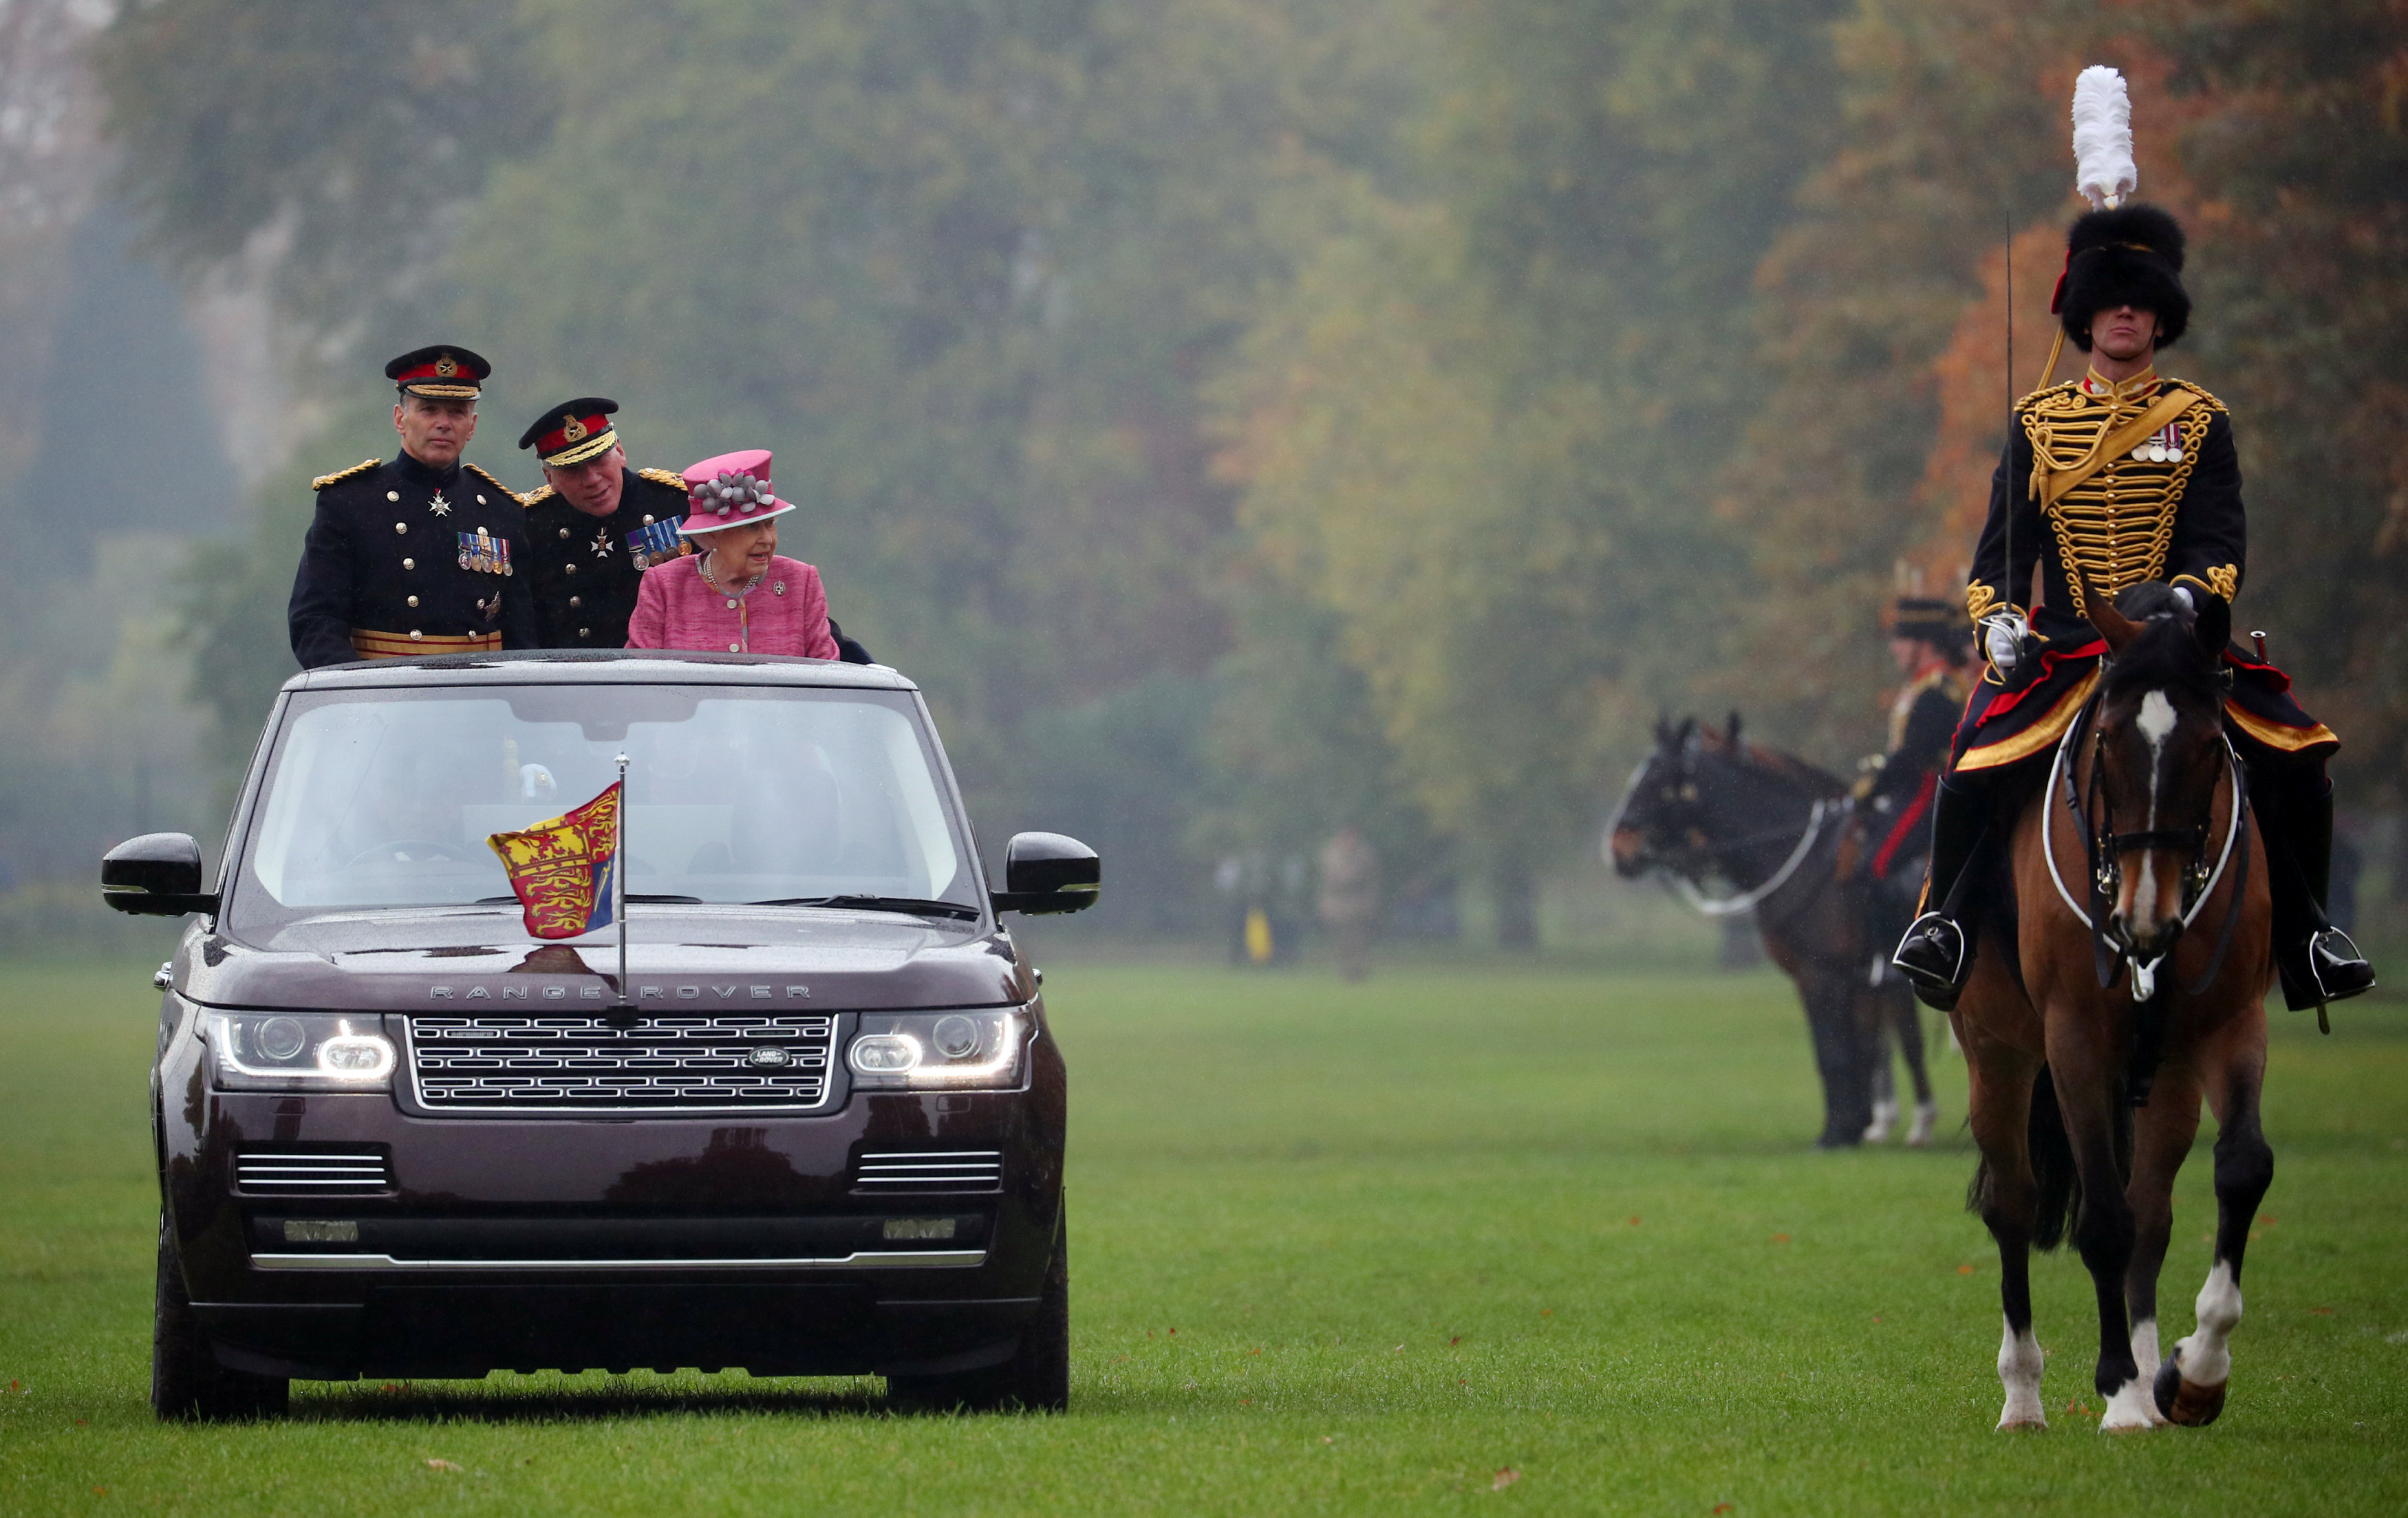 الملكة إليزابيث تتفقد القوات الملكية بسيارتها فى هايد بارك بلندن